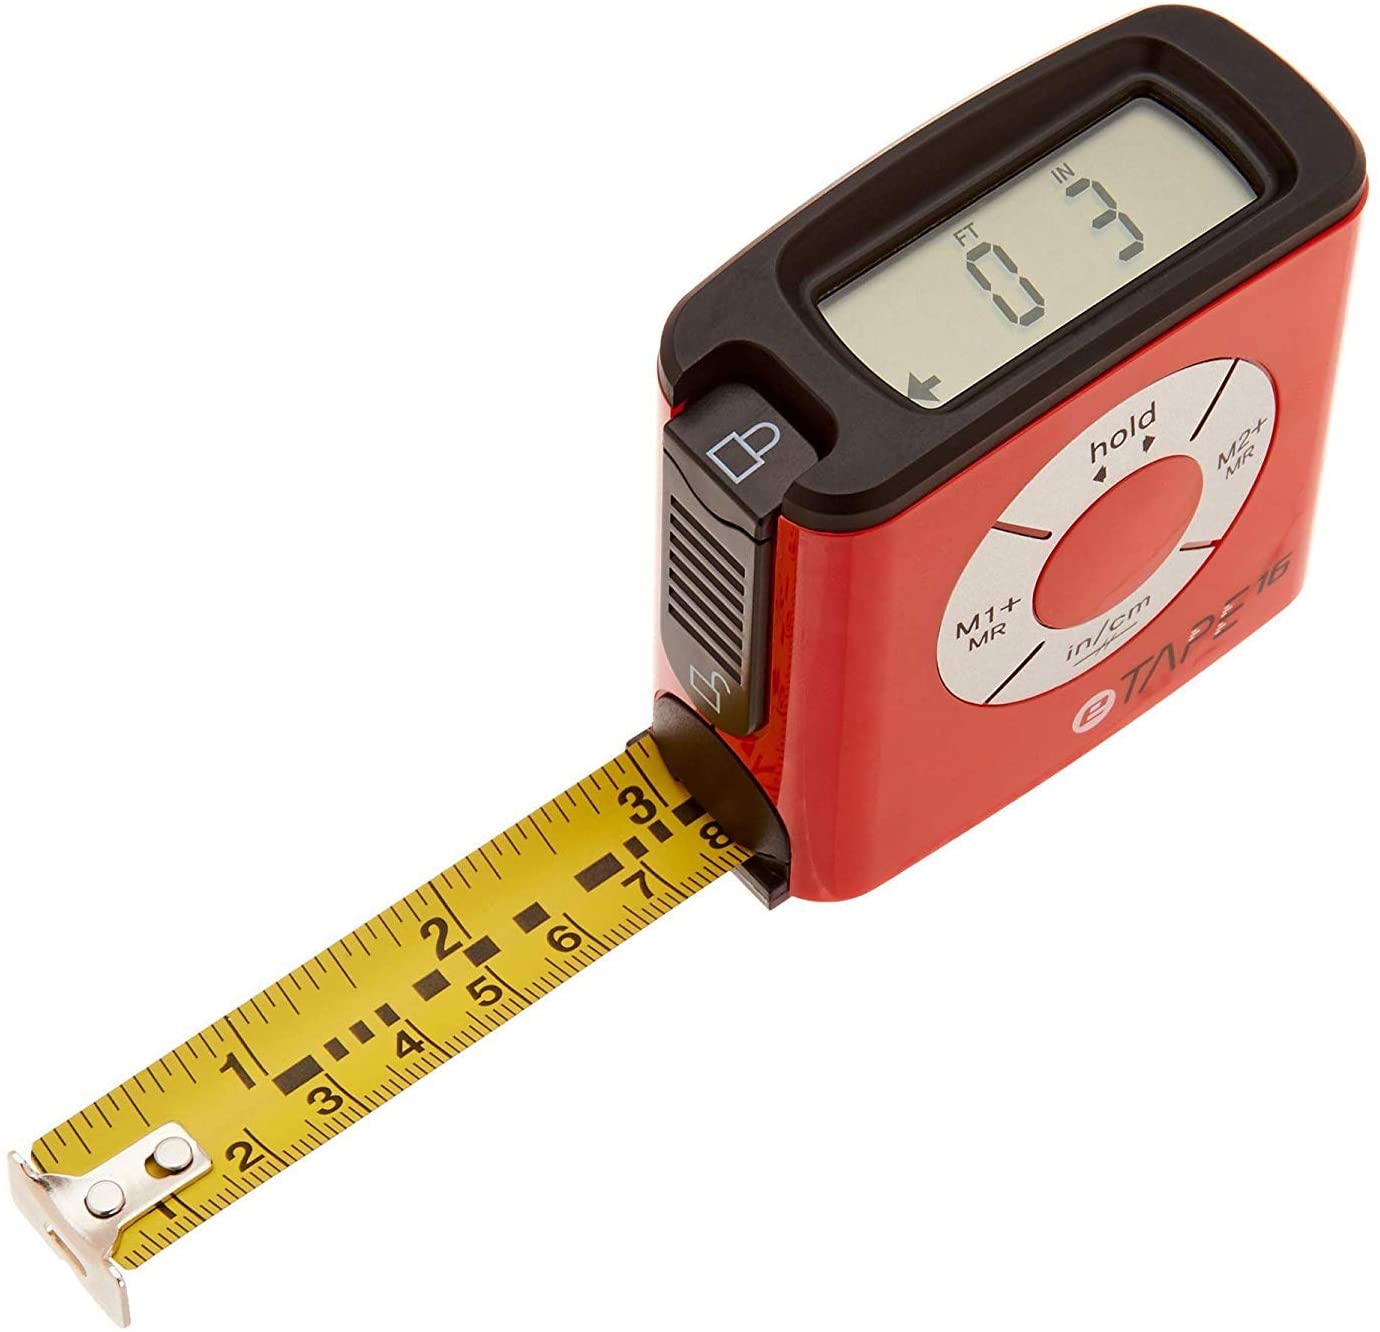 eTape16 ET16.75-db-RP Digital Tape Measure, 16 Feet, Red